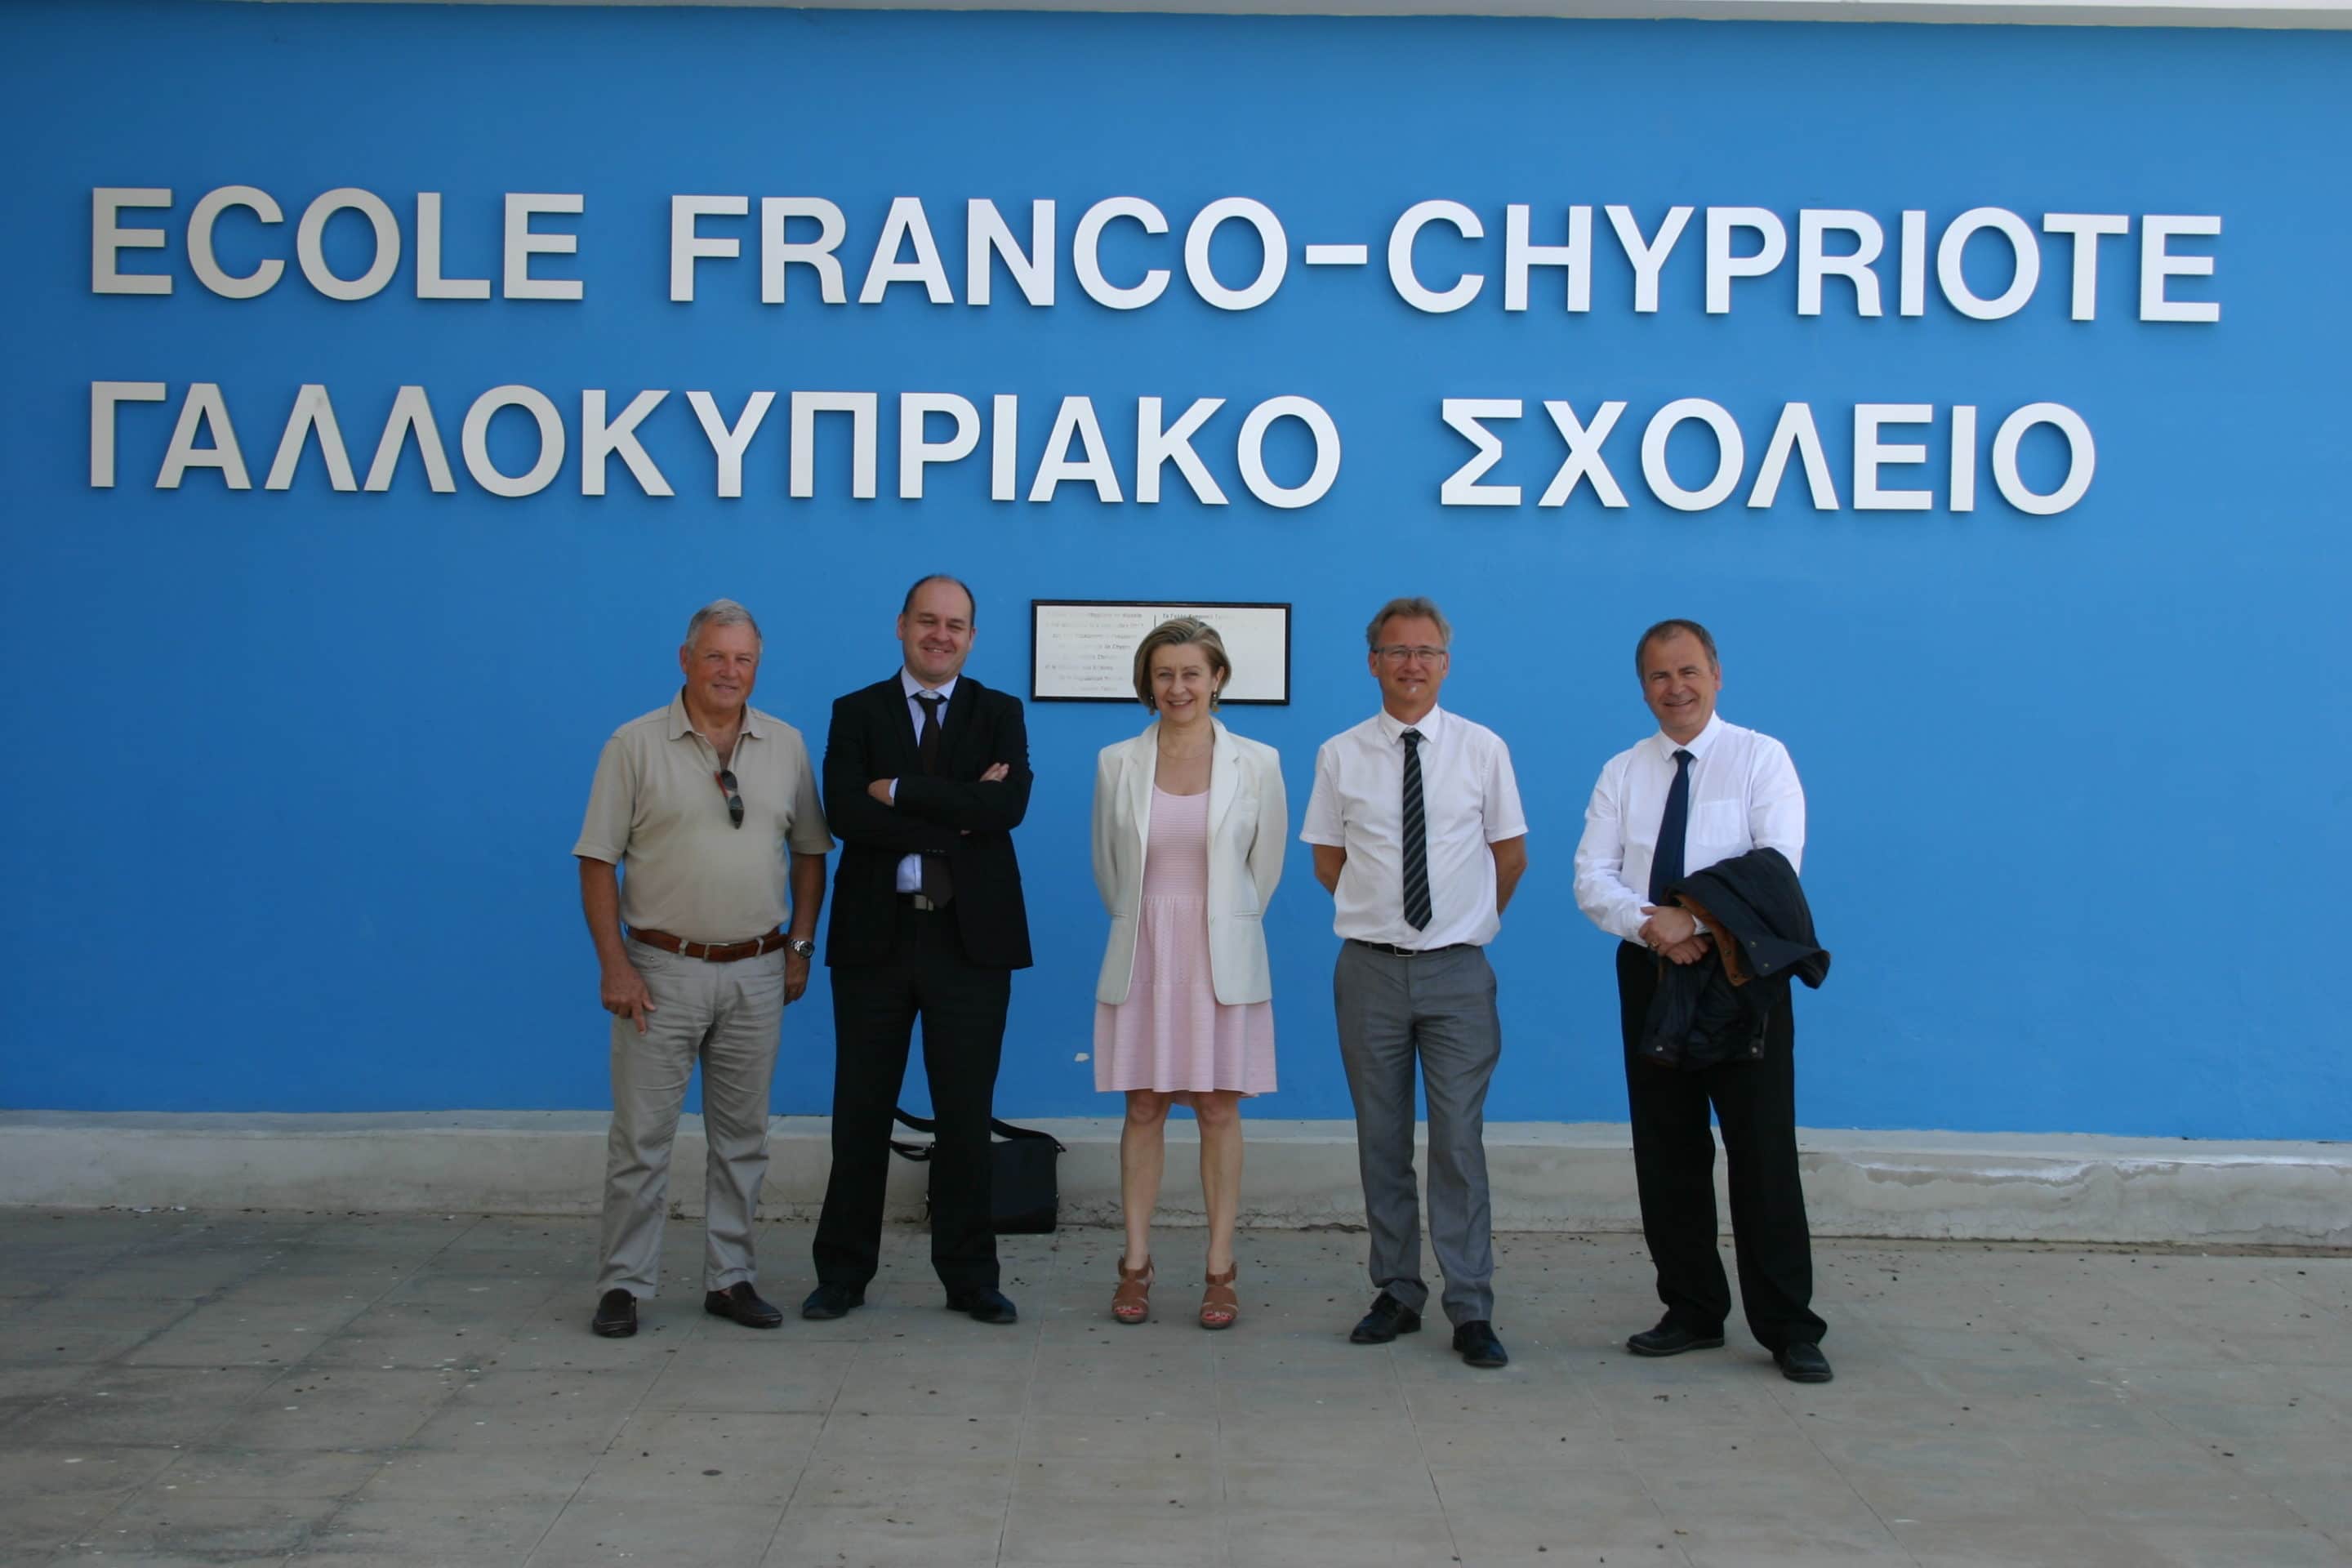 Compte rendu de mon déplacement en Grèce et à Chypre (12-16 mai 2014)